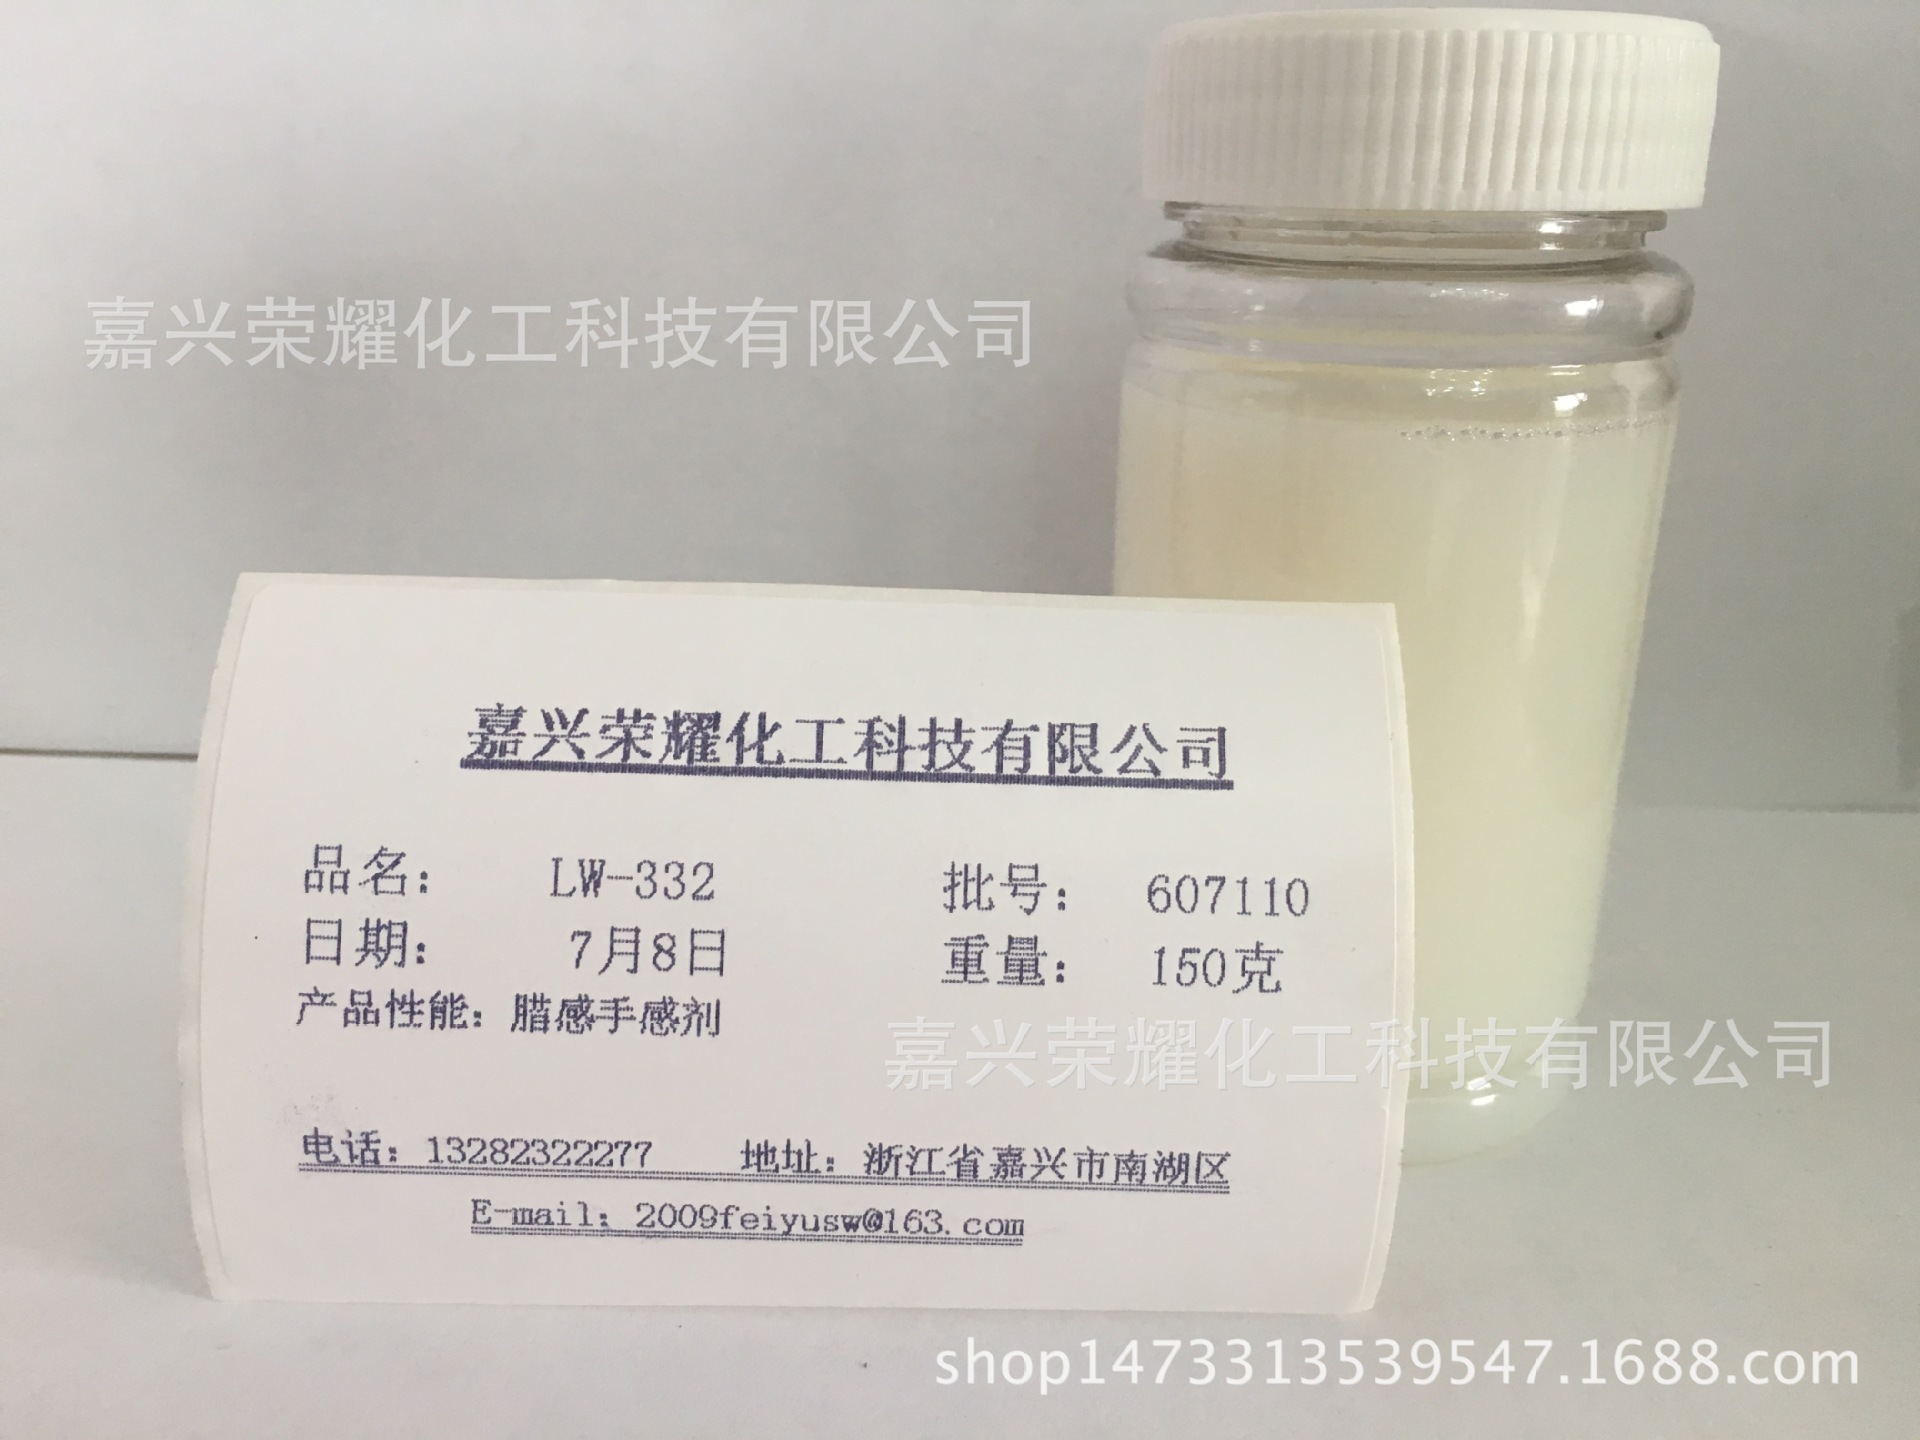 水性材料添加型助剂 腊感手感剂 LW-332